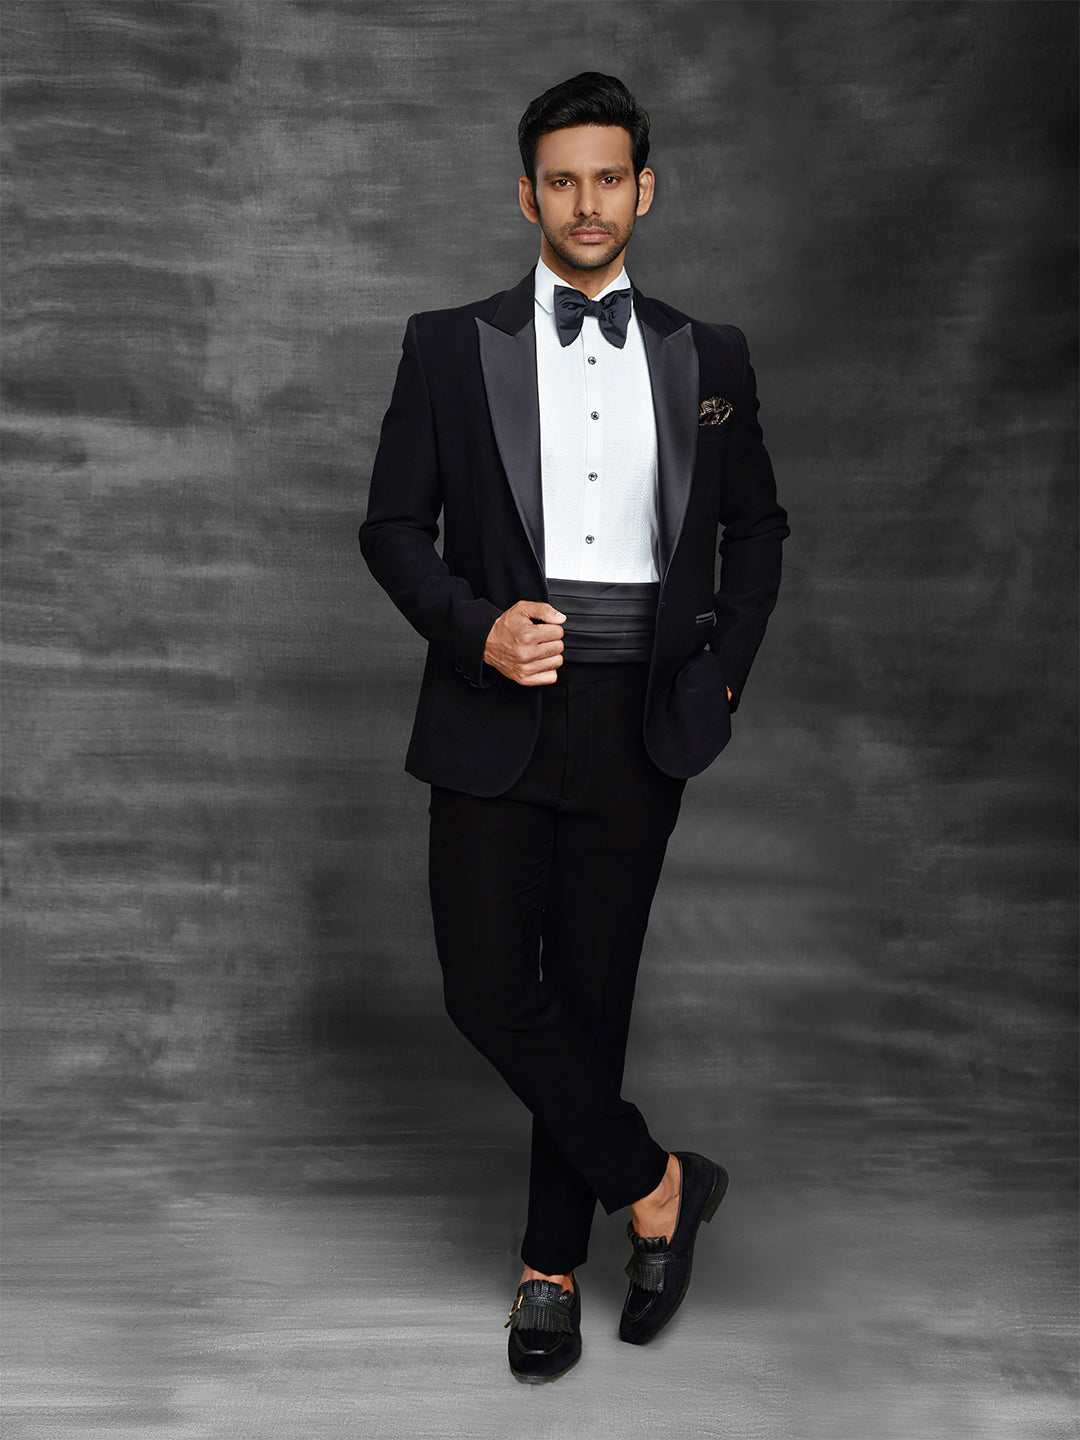 Classic black suit with waist belt. – Rechannel Fashions